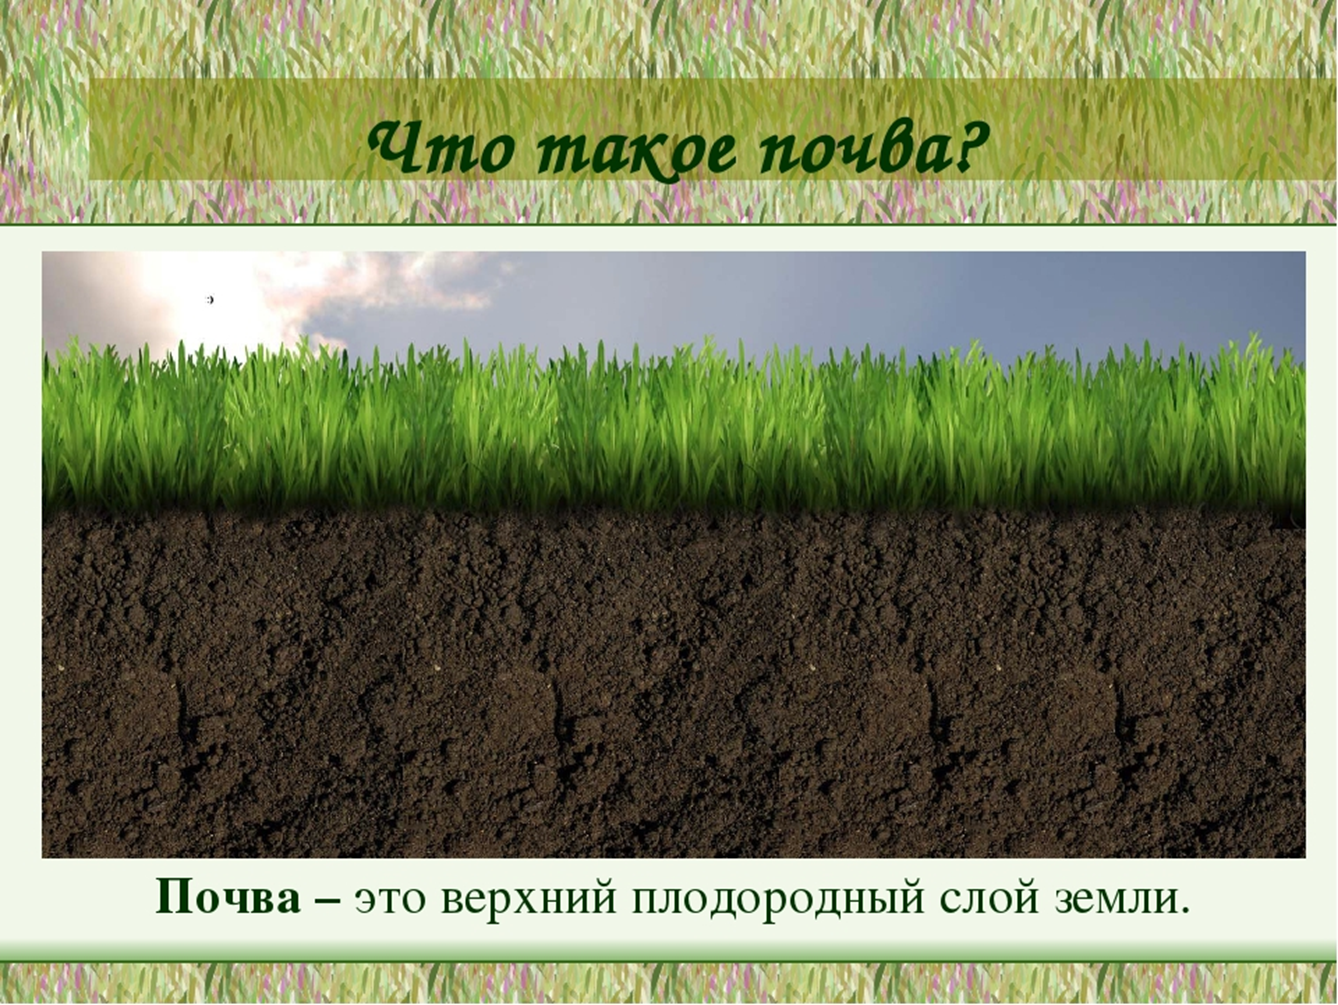 Плодородие почвы. Плодородный слой почвы. Верхний плодородный слой почвы. Почва плодородный слой земли. Плодоносный слой почвы.